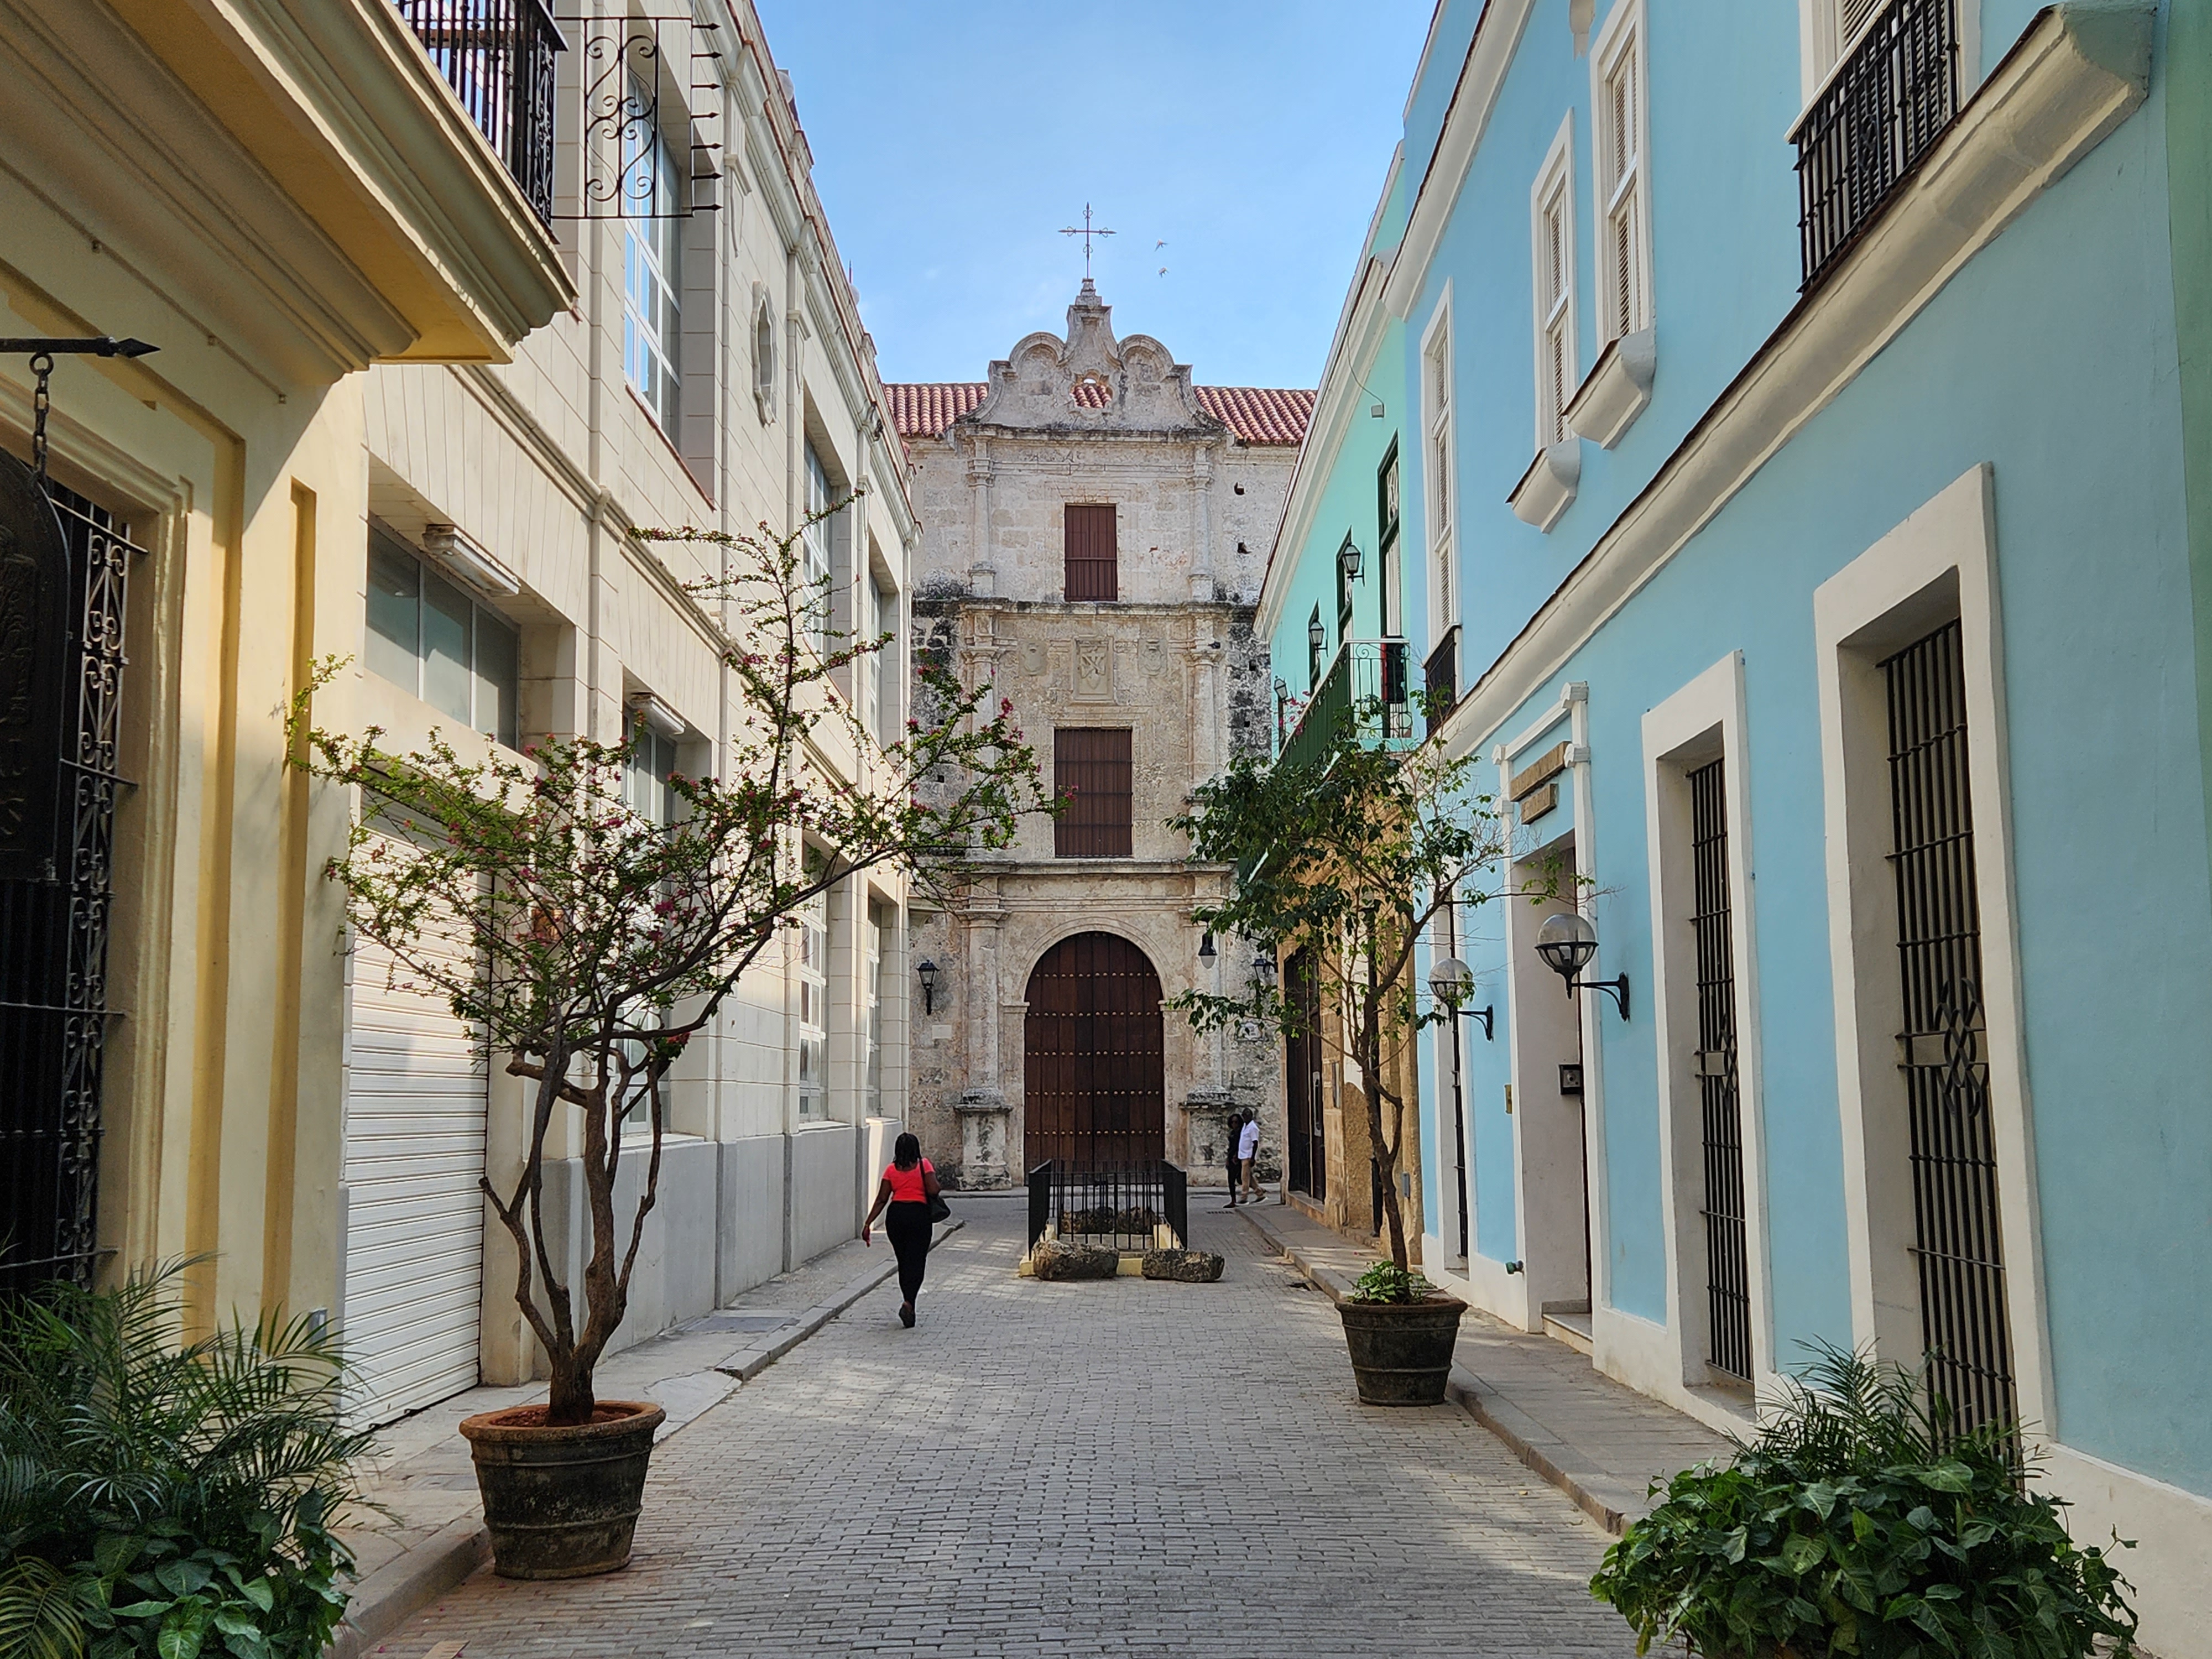 Street in Cuba